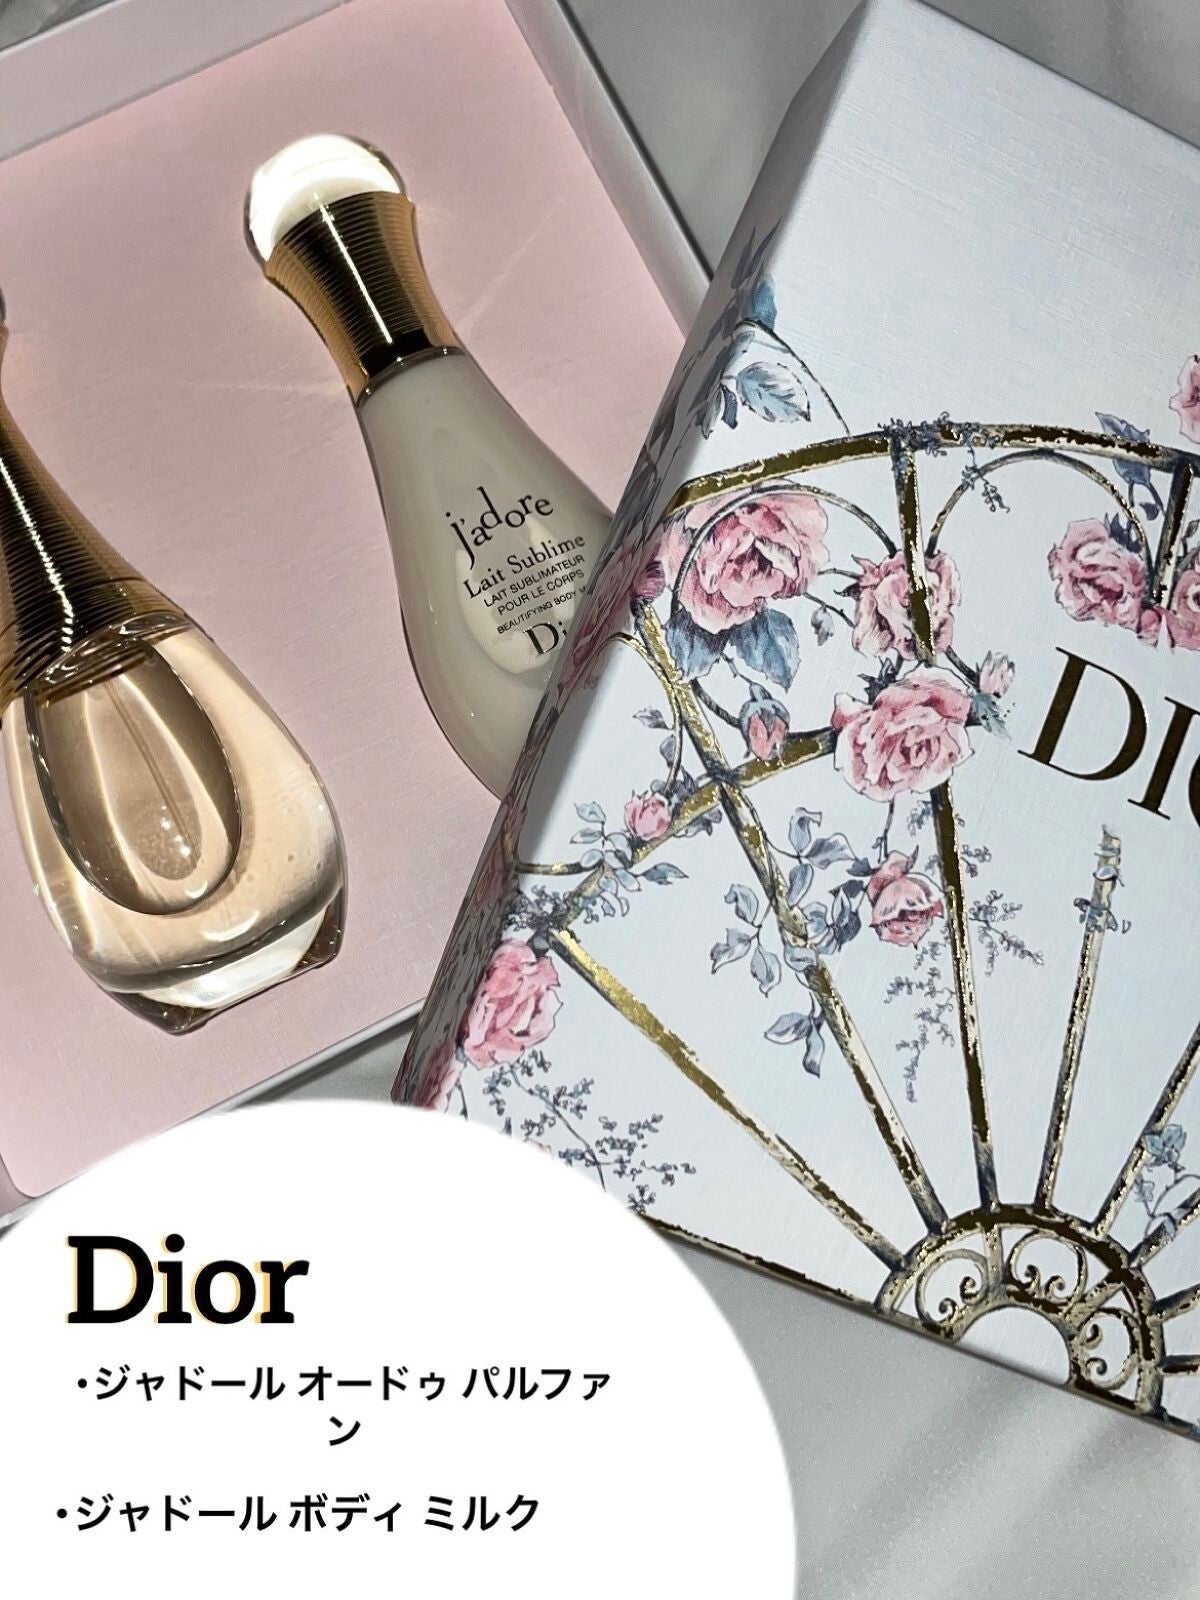 Dior ディオール ジャドール ボディミルク - 乳液・ミルク